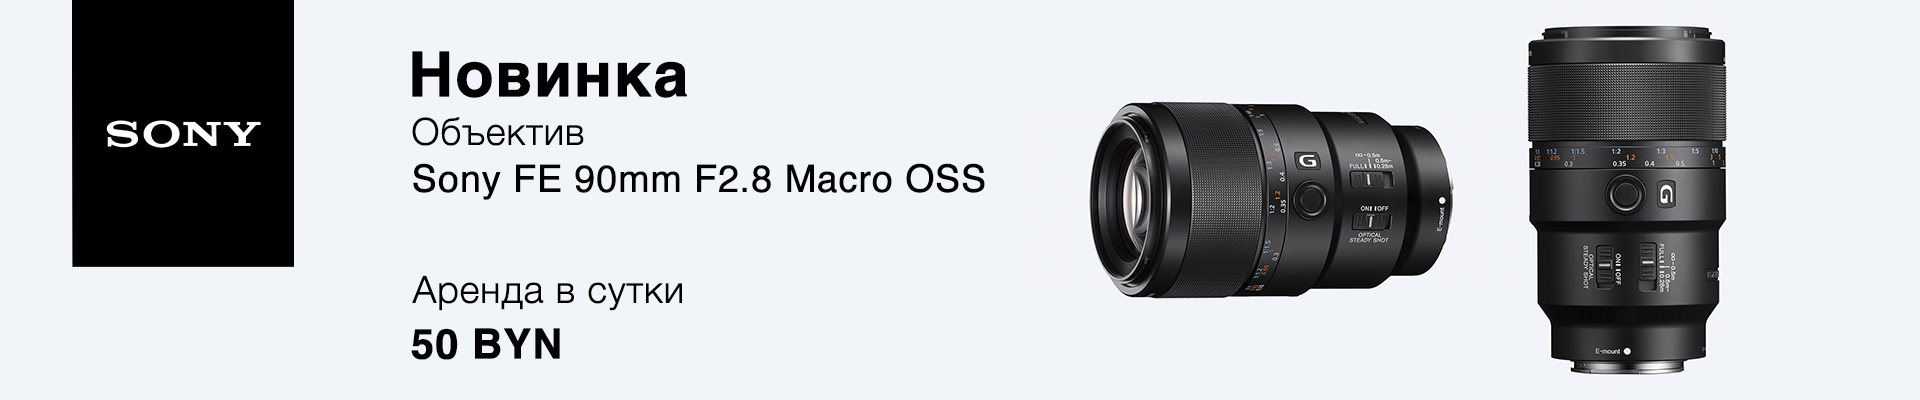 Объектив Sony FE 90mm F2.8 Macro OSS